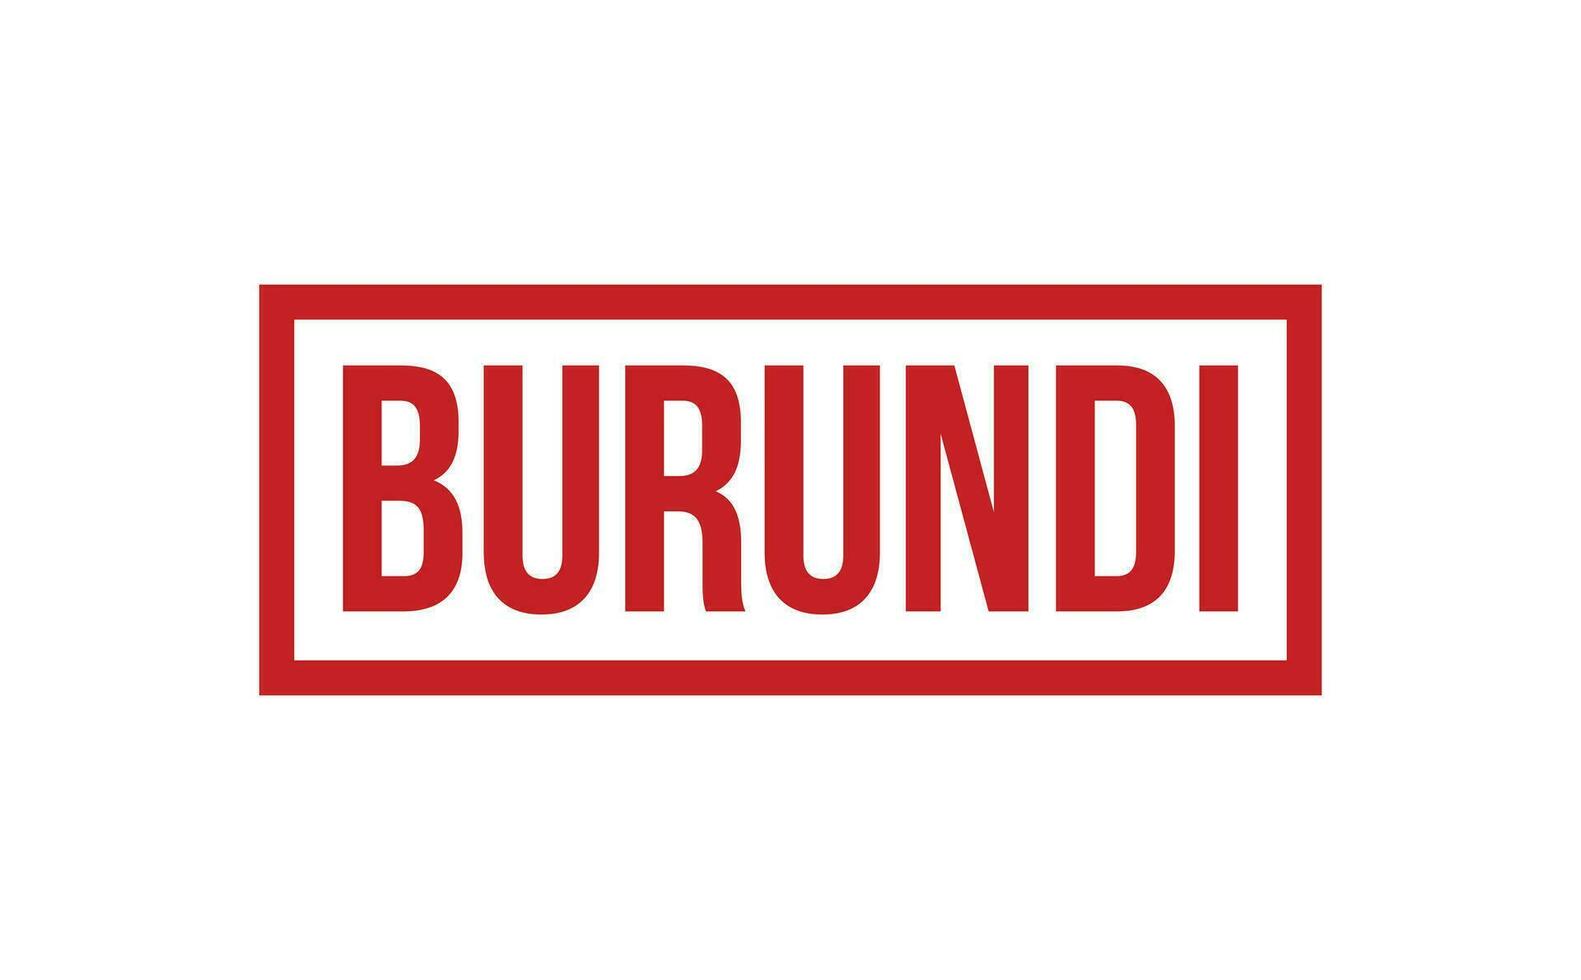 Burundi Gummi Briefmarke Siegel Vektor